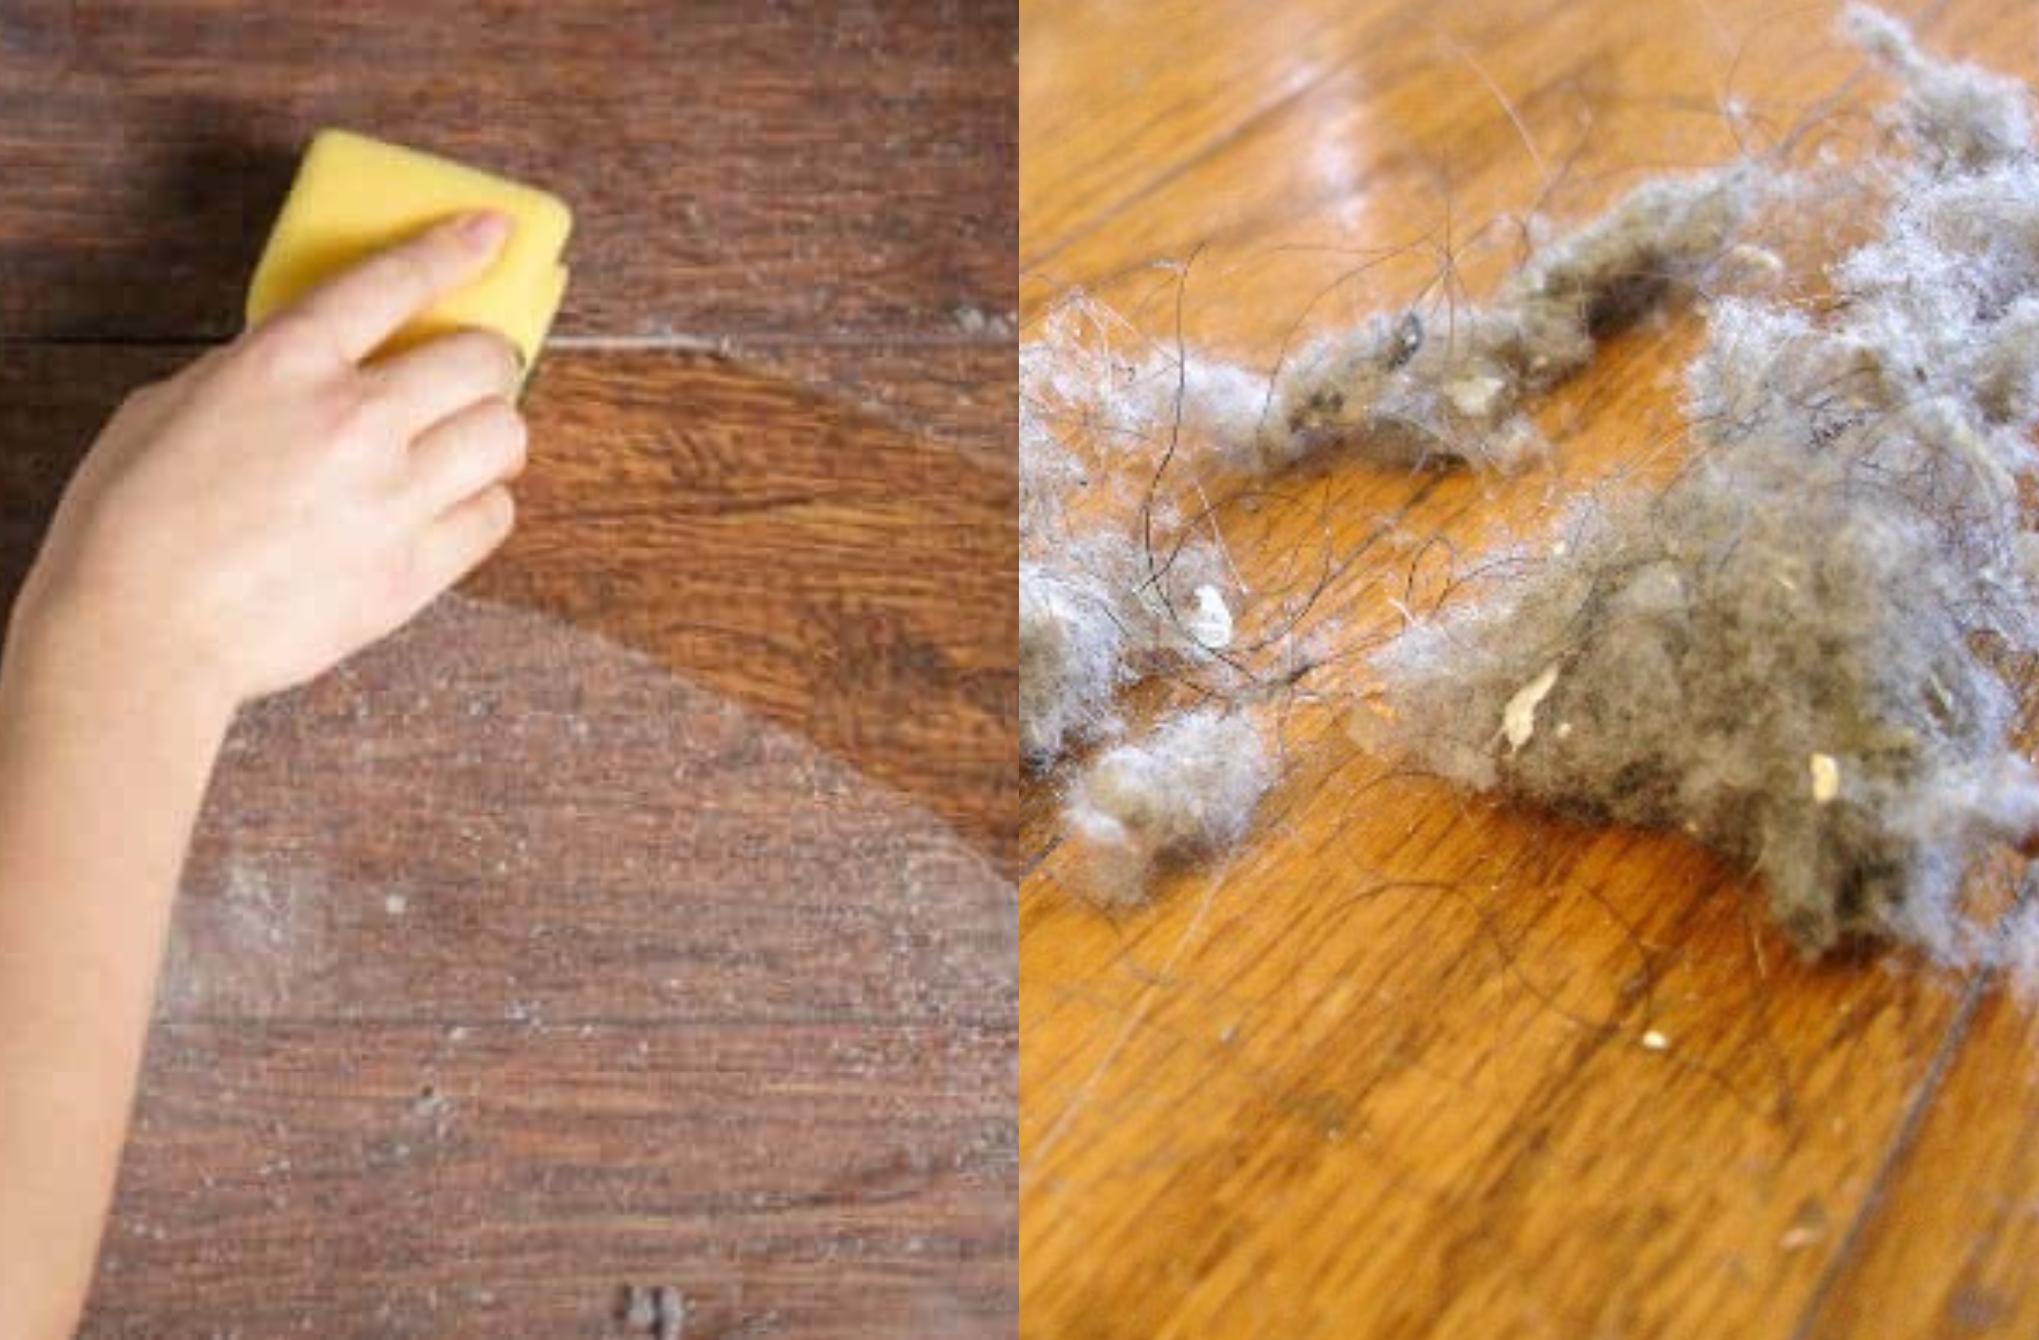 Επίμονη σκόνη και χνούδια στο σπίτι δείτε ποια αντικείμενα που κάνουν το σπίτι συνεχώς σκονισμένο και τι μπορείτε να κάνετε